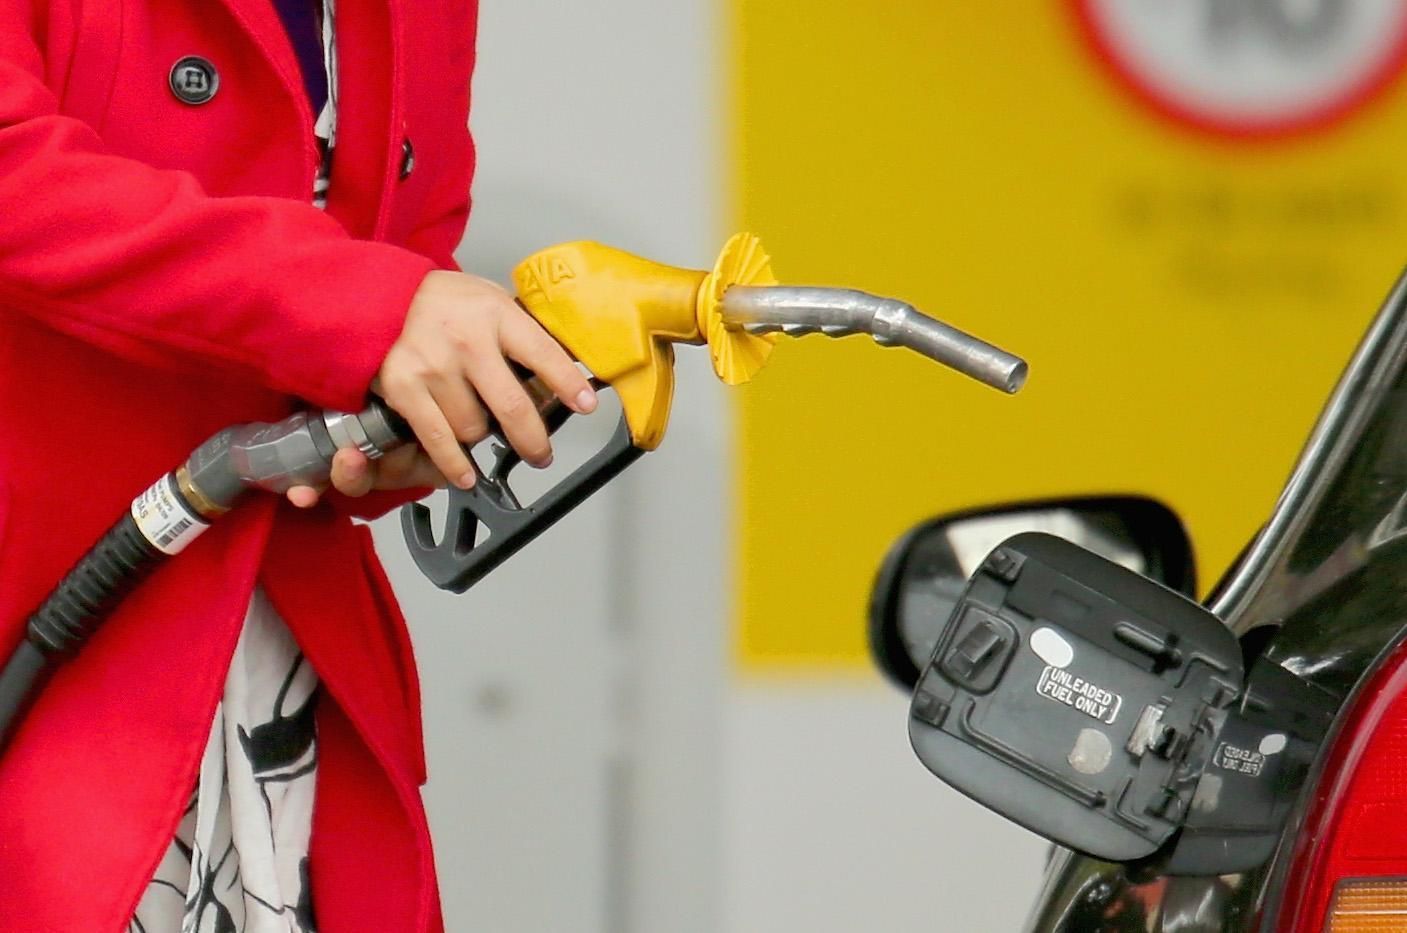 Цена бензина резко выросла: какая стоимость горючего на АЗС - Экономические новости Украины - Экономика